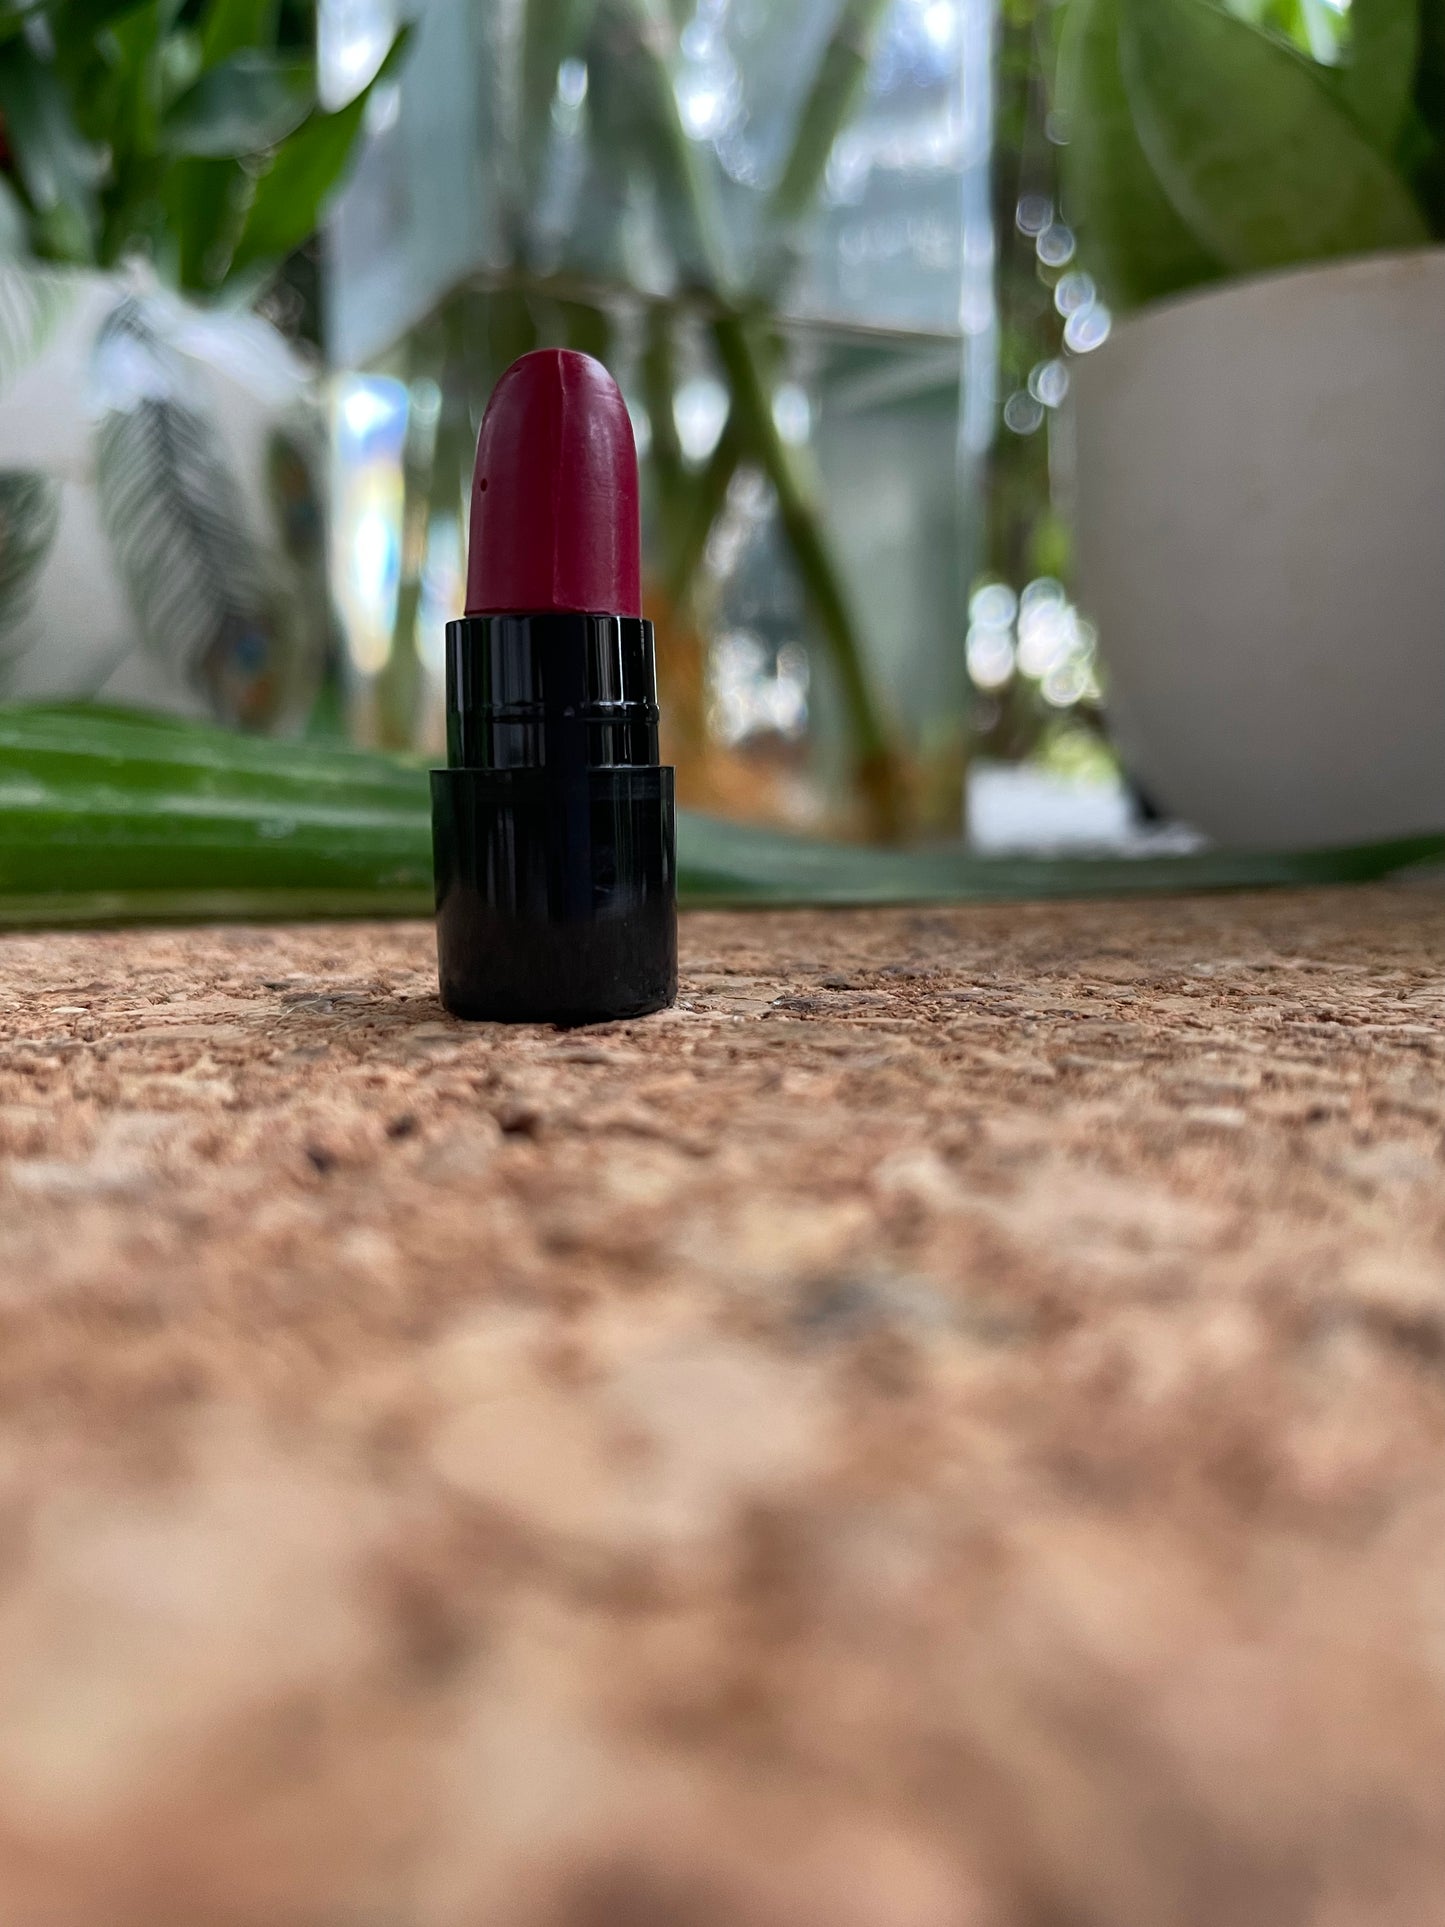 OshtaRaag Lipstick Minis (12)